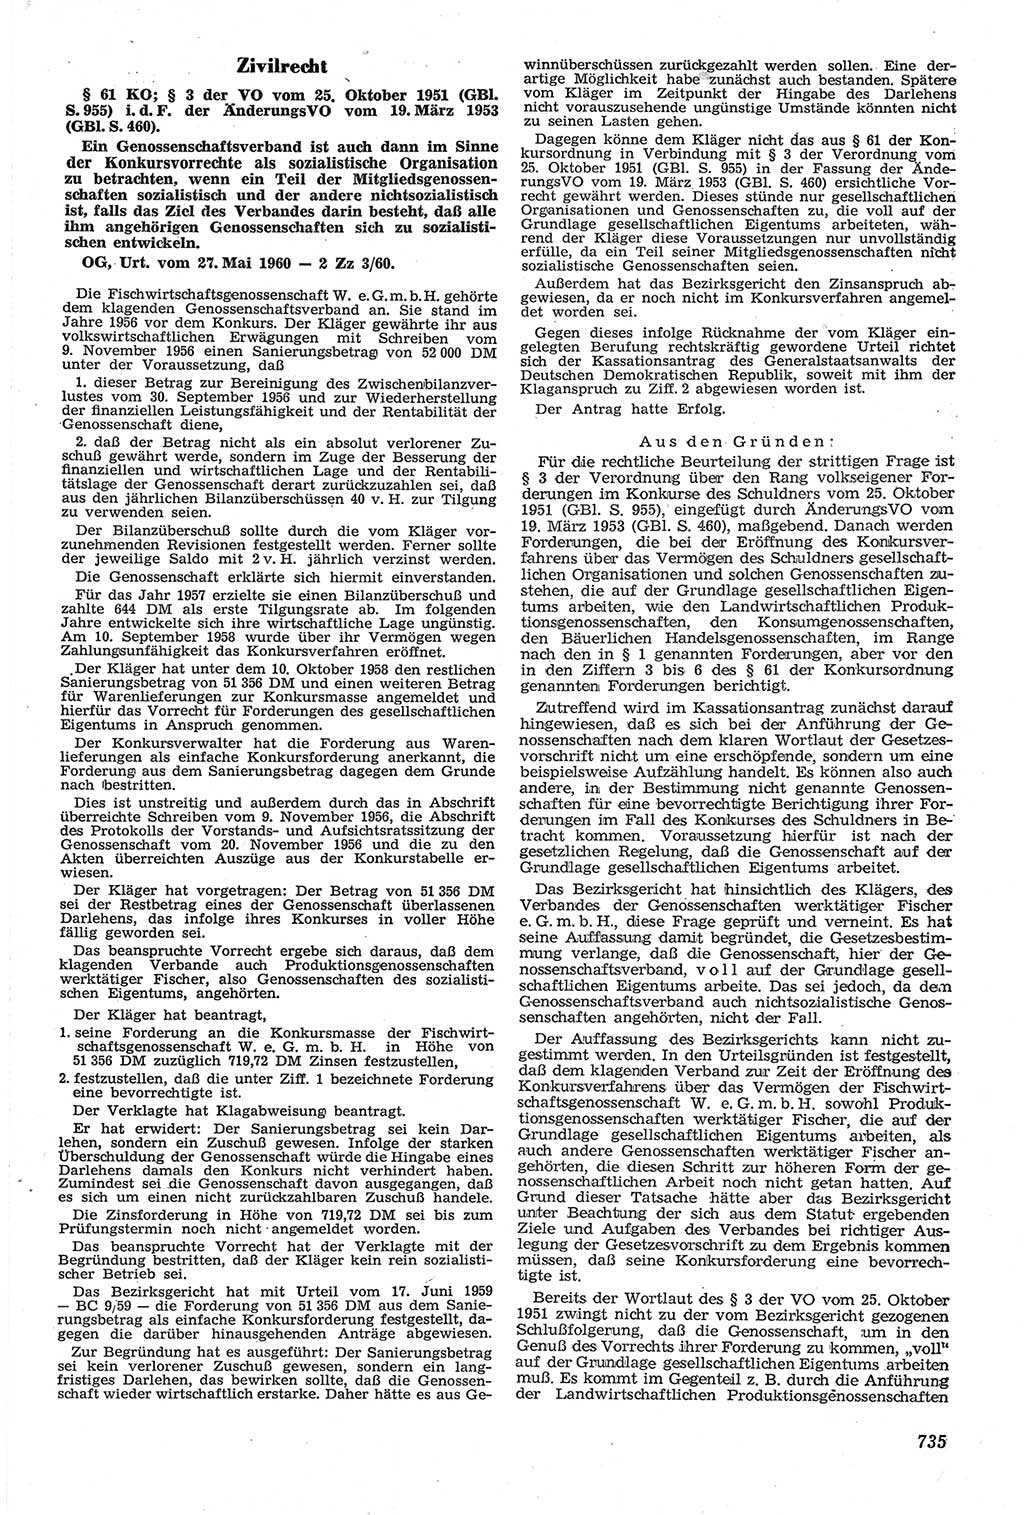 Neue Justiz (NJ), Zeitschrift für Recht und Rechtswissenschaft [Deutsche Demokratische Republik (DDR)], 14. Jahrgang 1960, Seite 735 (NJ DDR 1960, S. 735)